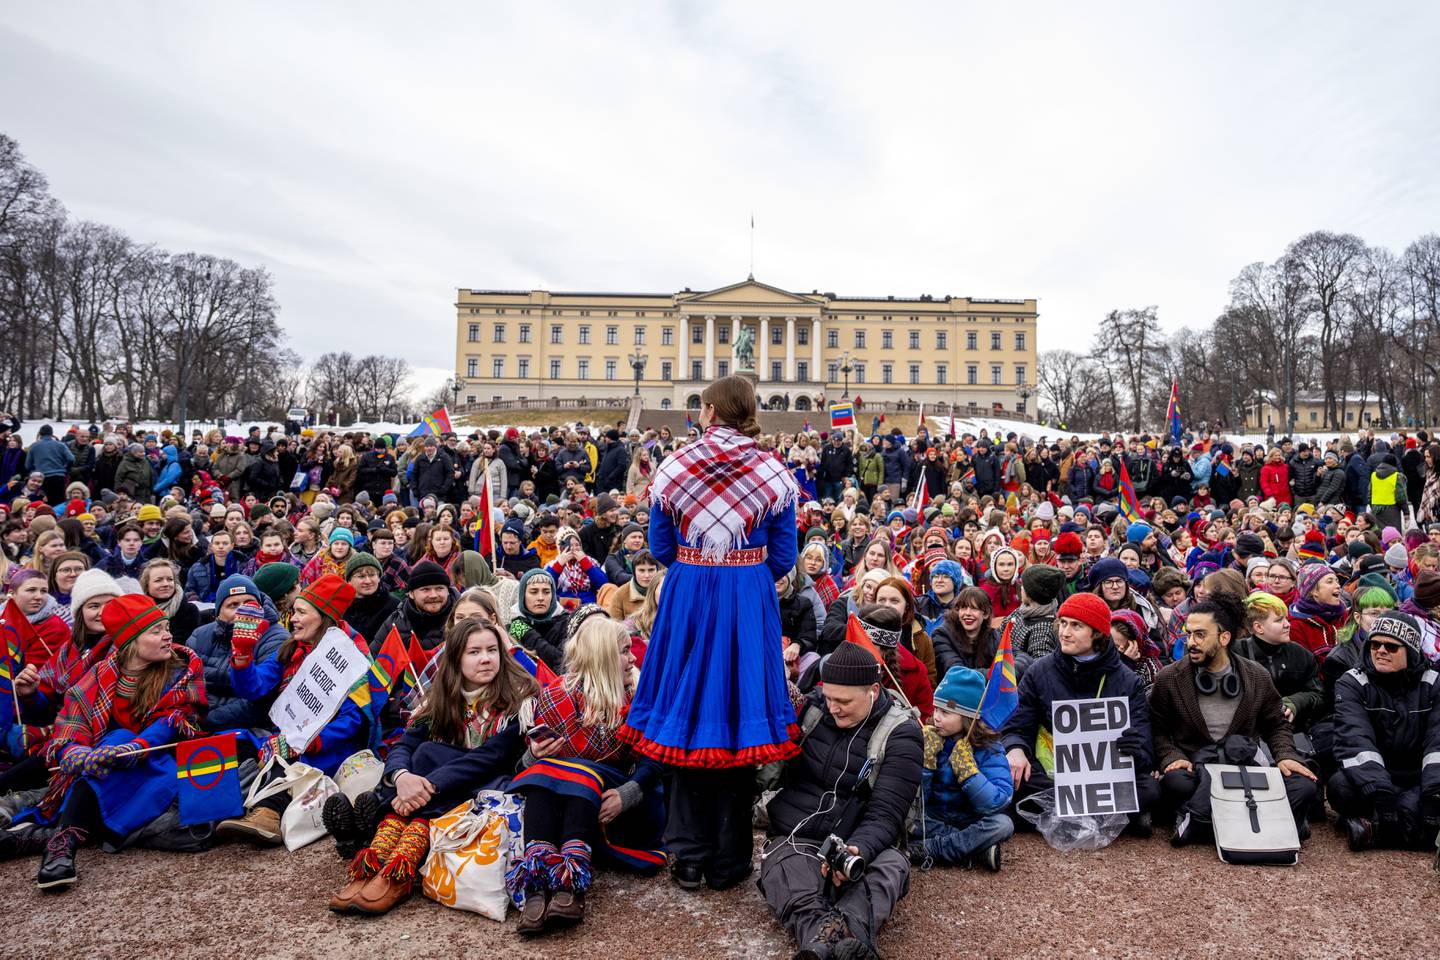 Aksjonistene som i over en uke har protesterte i Oslo mot vindturbinene på Fosen, avsluttet fredag forrige uke aksjonen med en markering foran Slottet. I etterkant har trusler og hets ramlet inn.
Foto: Javad Parsa / NTB